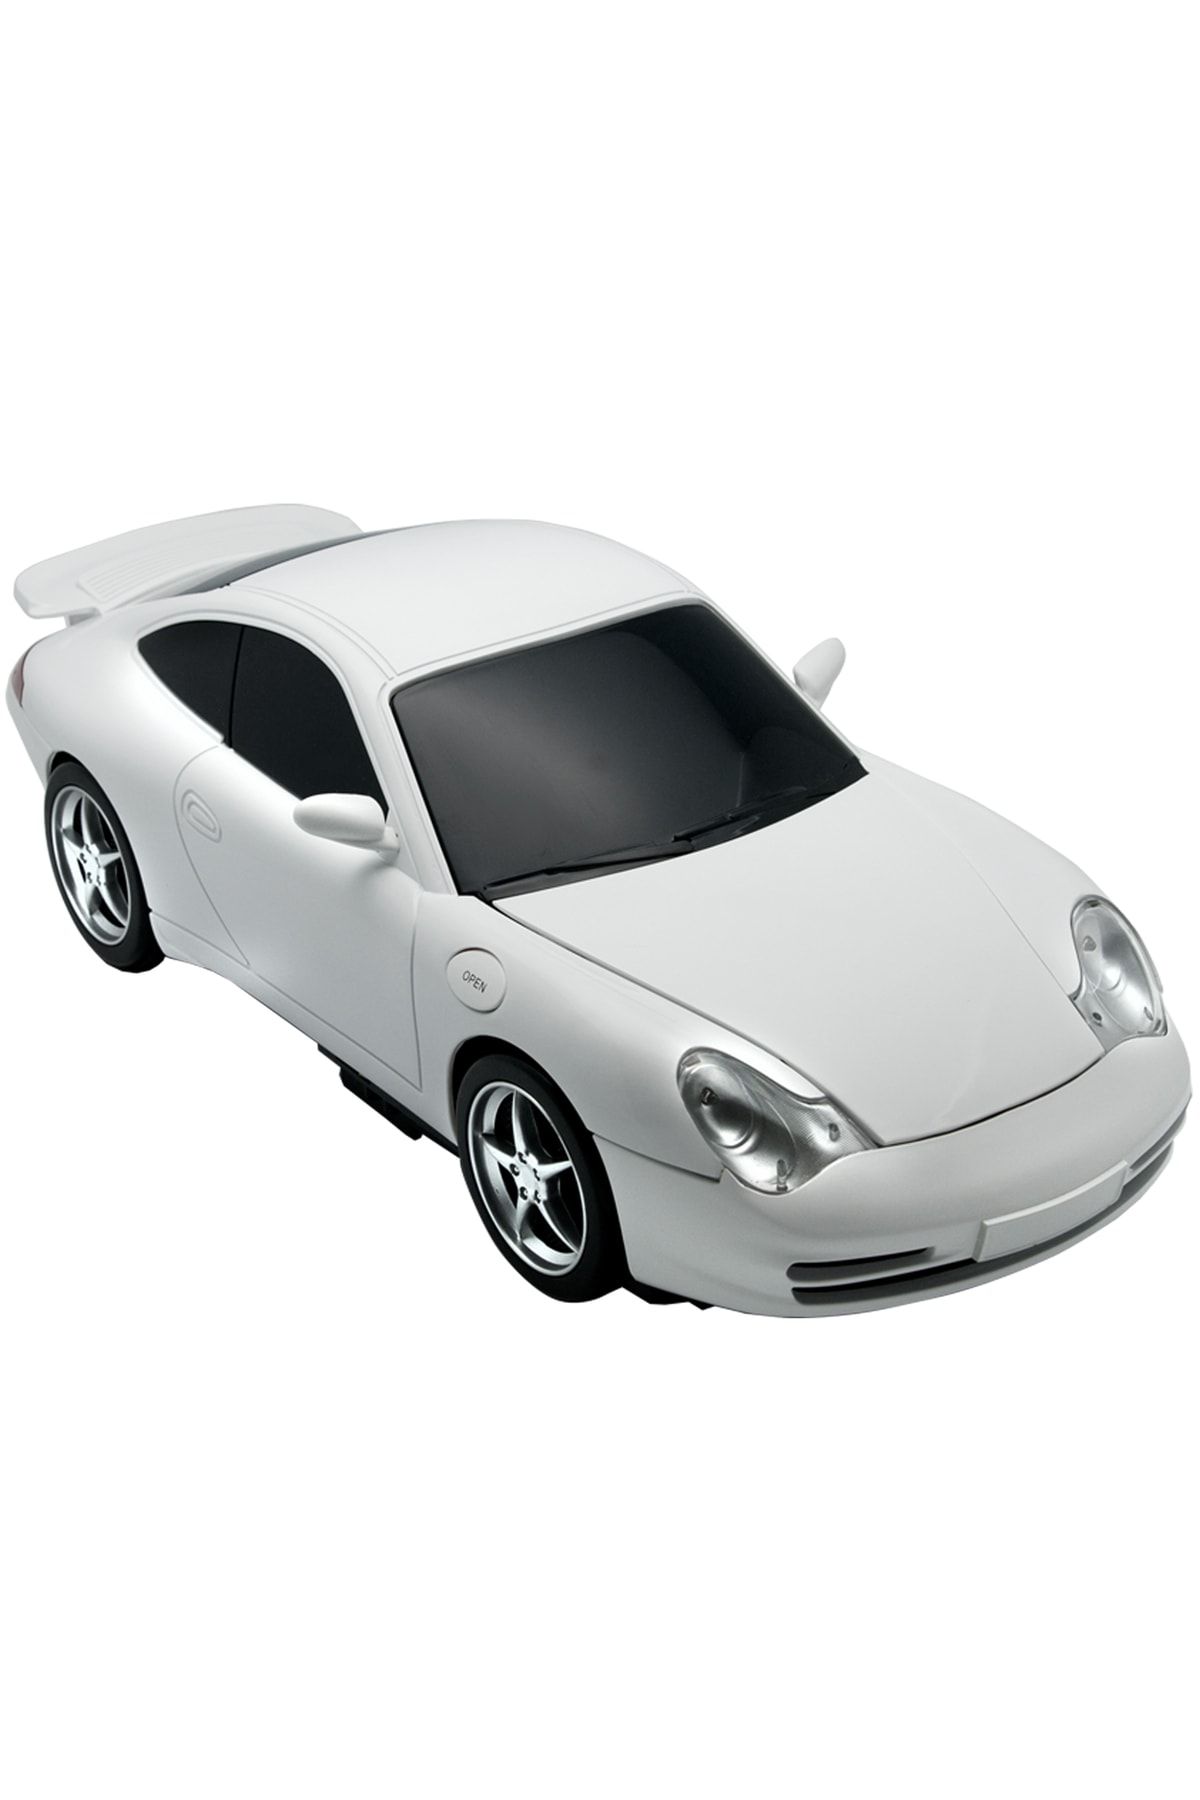 Nozamatech Dvd Okuyucu (player) - Porsche Model